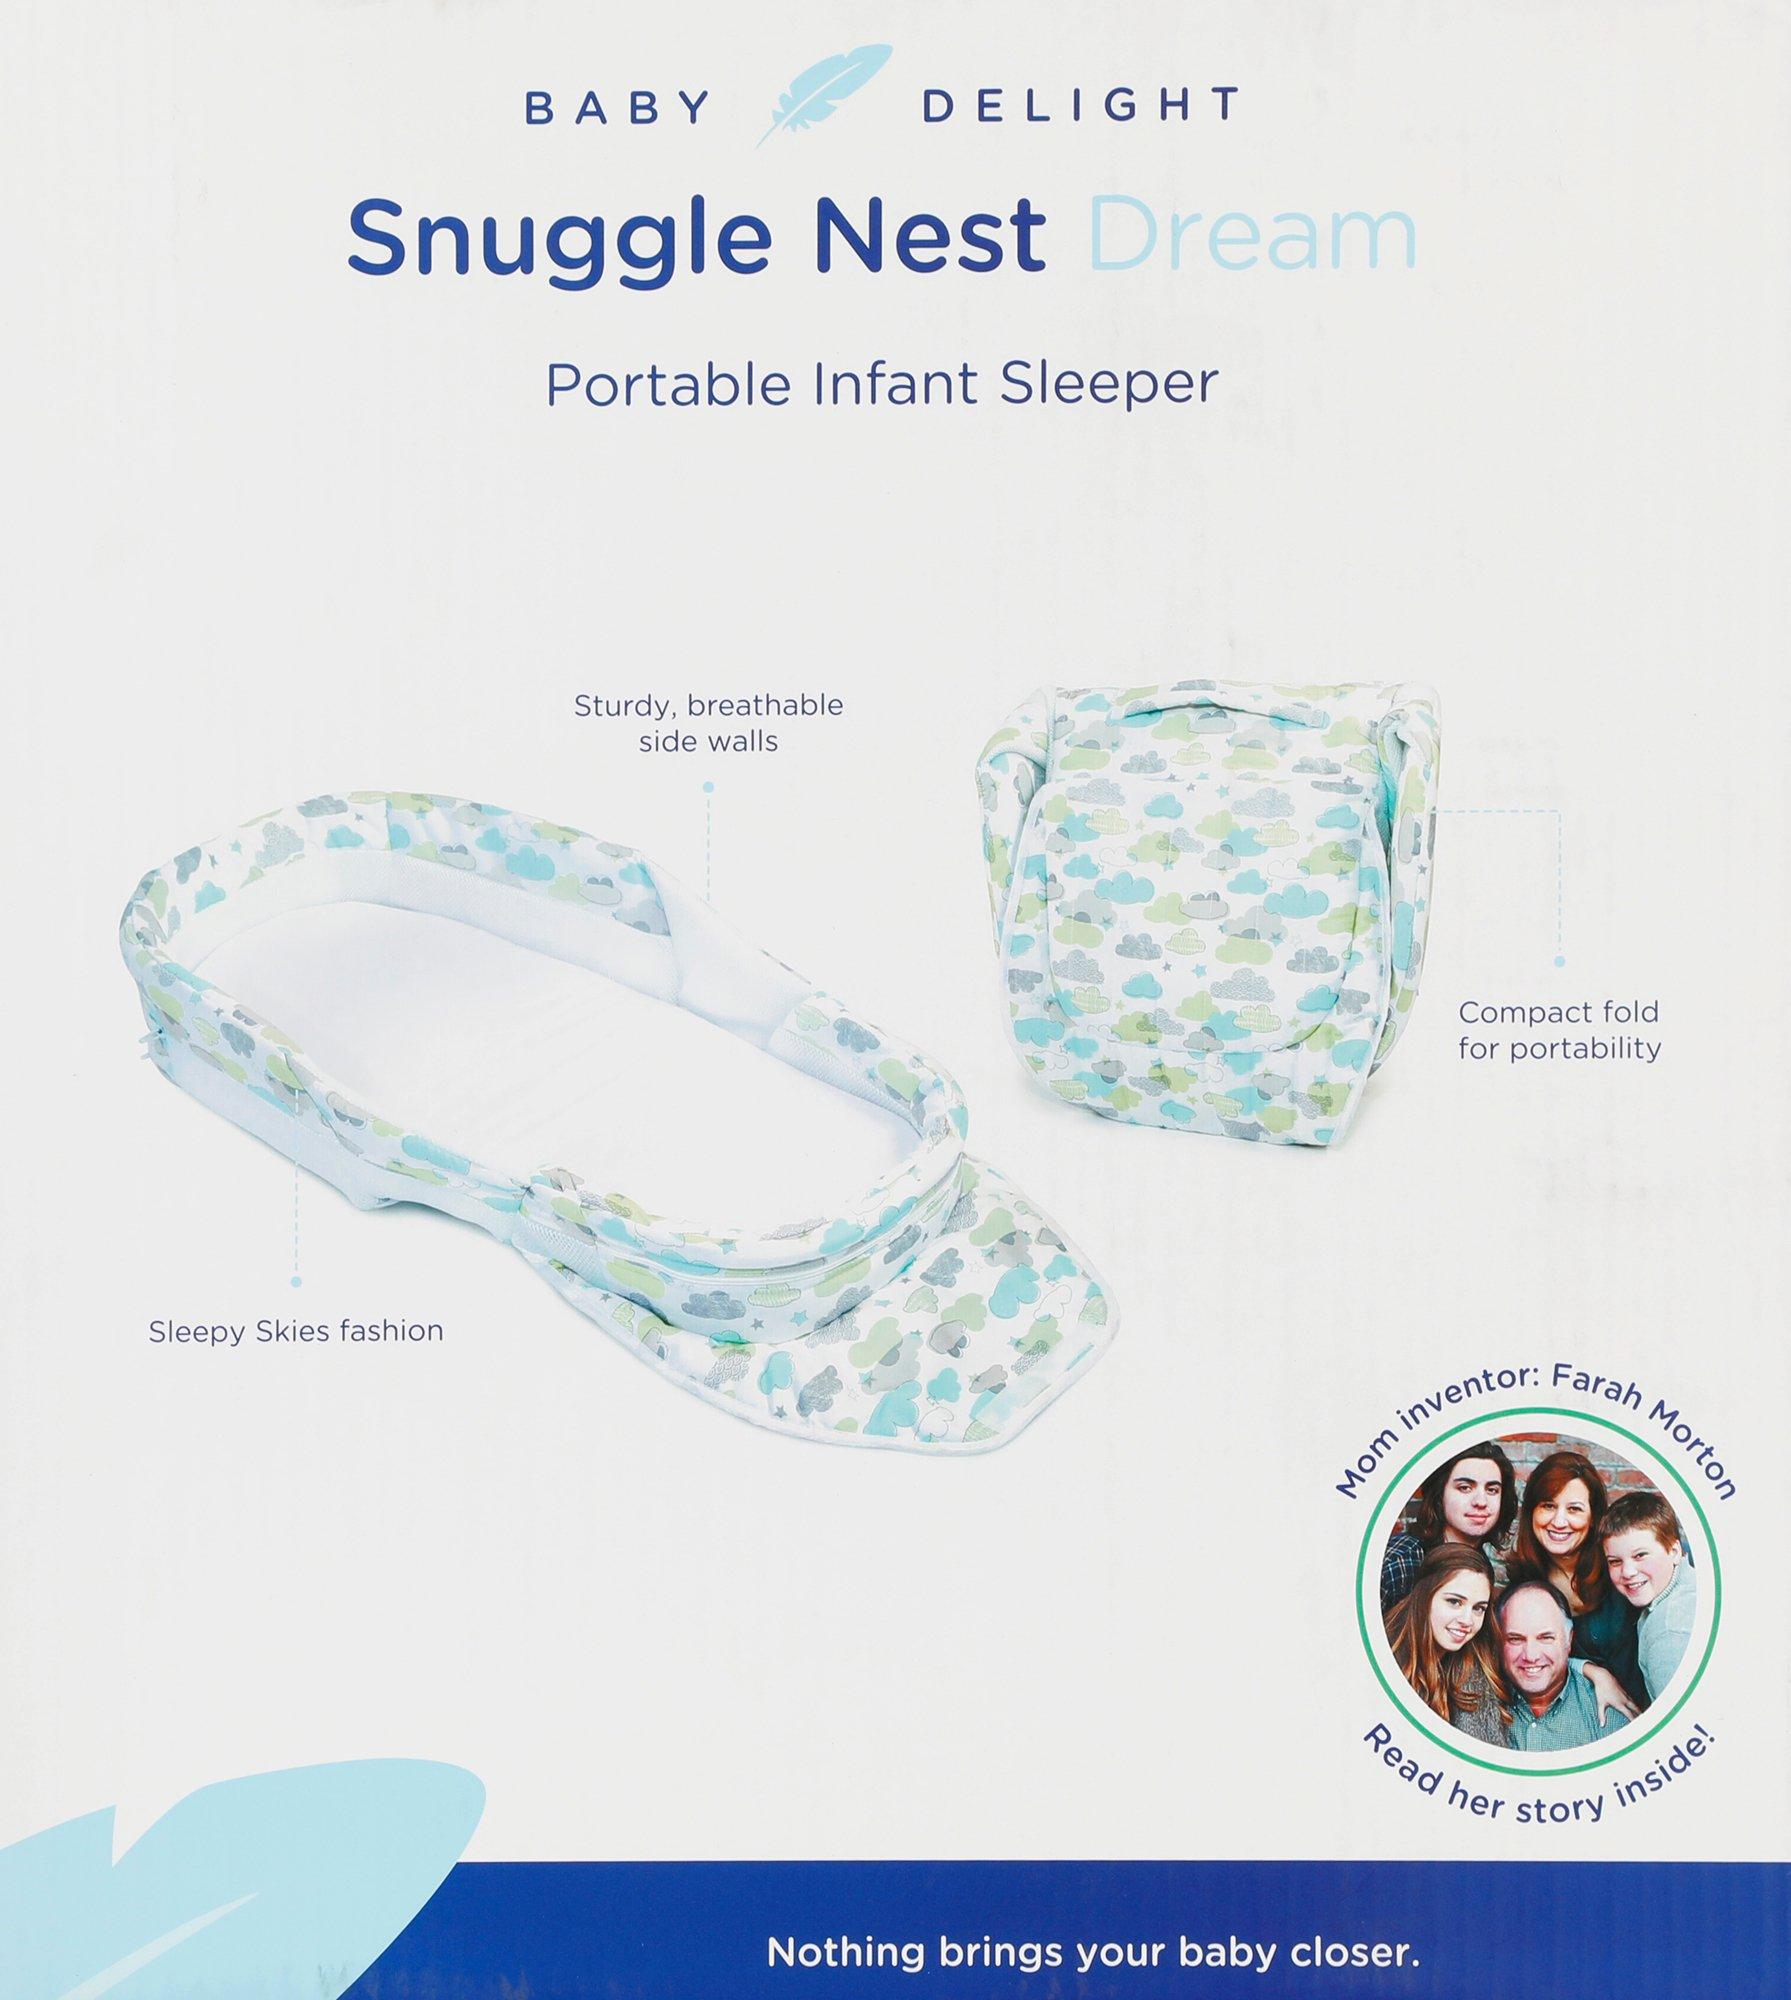 snuggle nest dream portable infant sleeper